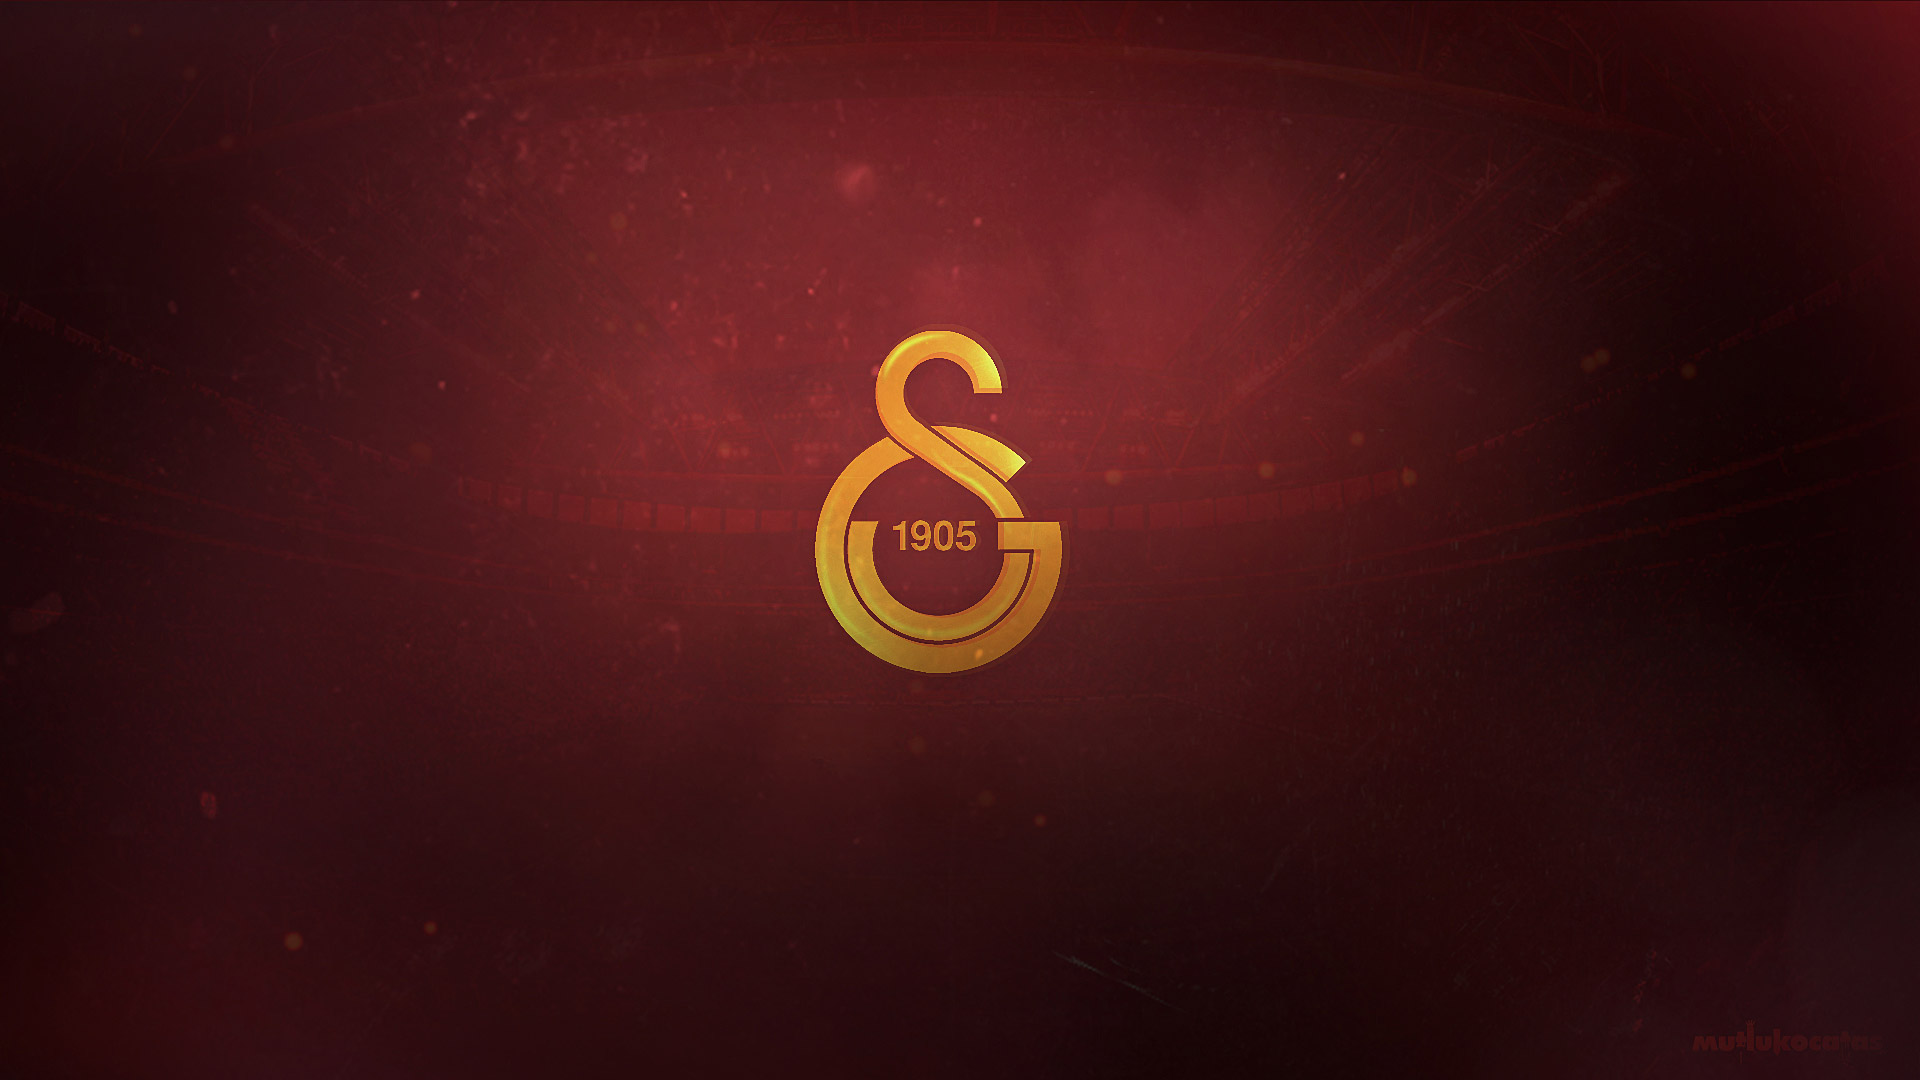 Galatasaray Futbol Kulübü – Asaletin Adı ve Tutkunun Evreni